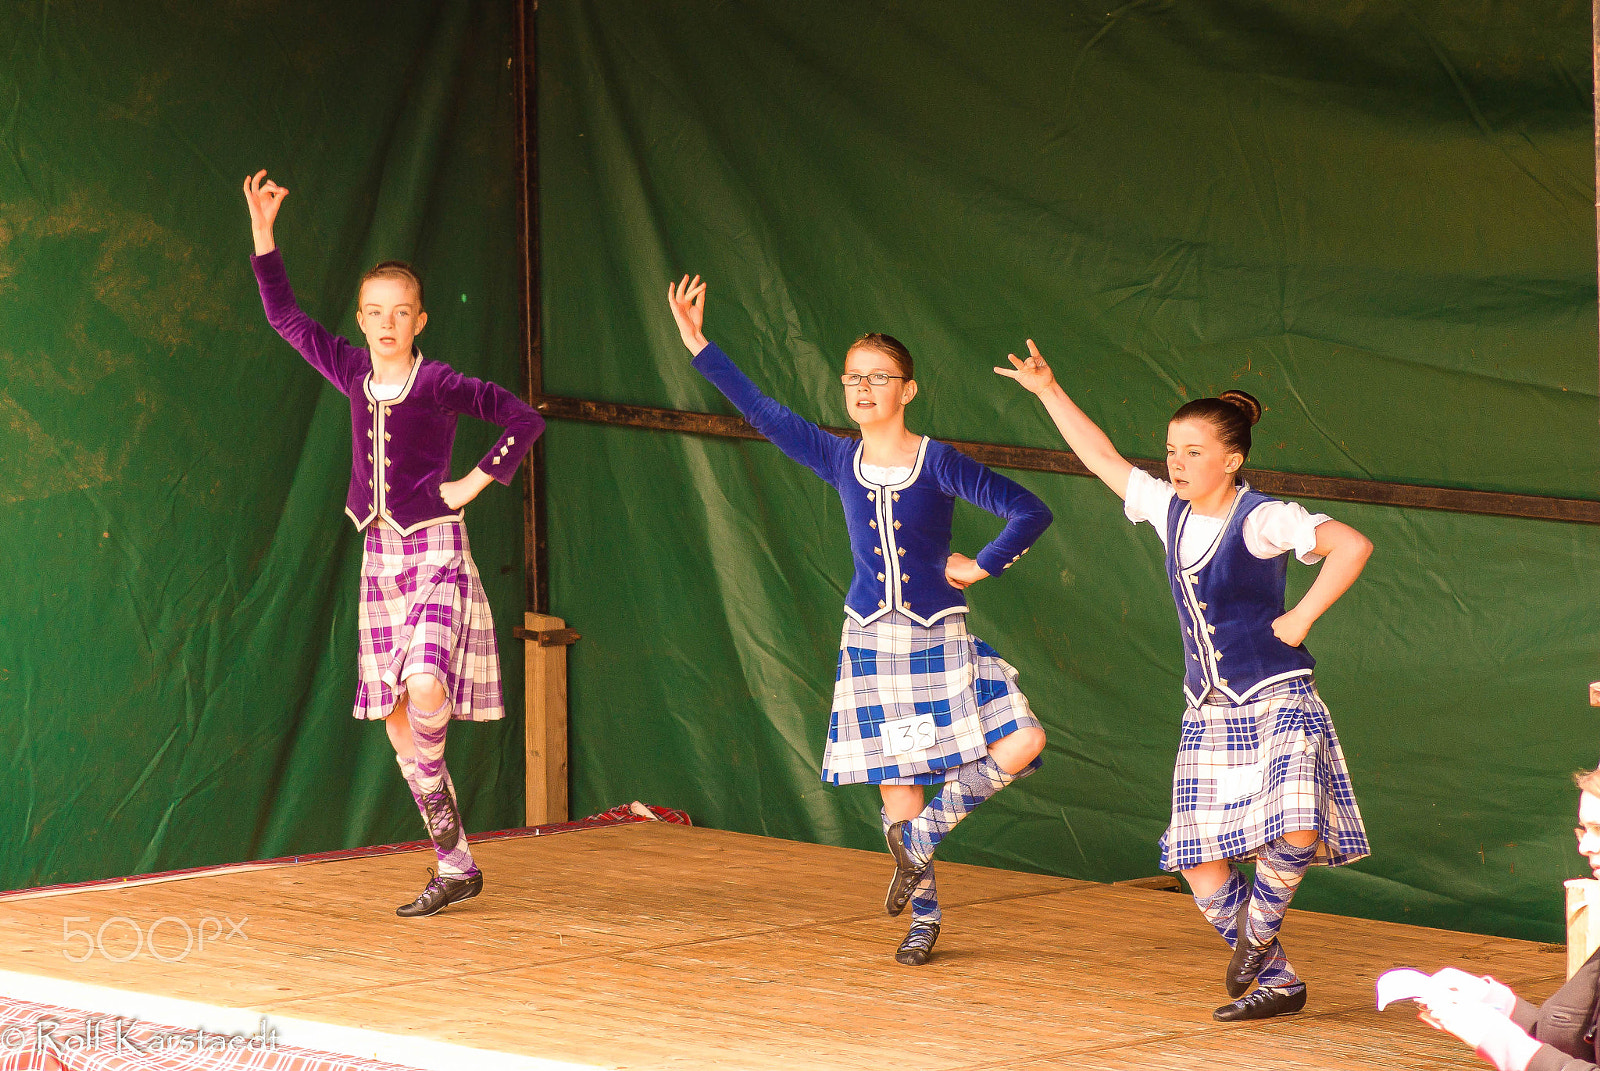 Pentax K-m (K2000) sample photo. R karstaedt highland dancers cornhill highland games photography